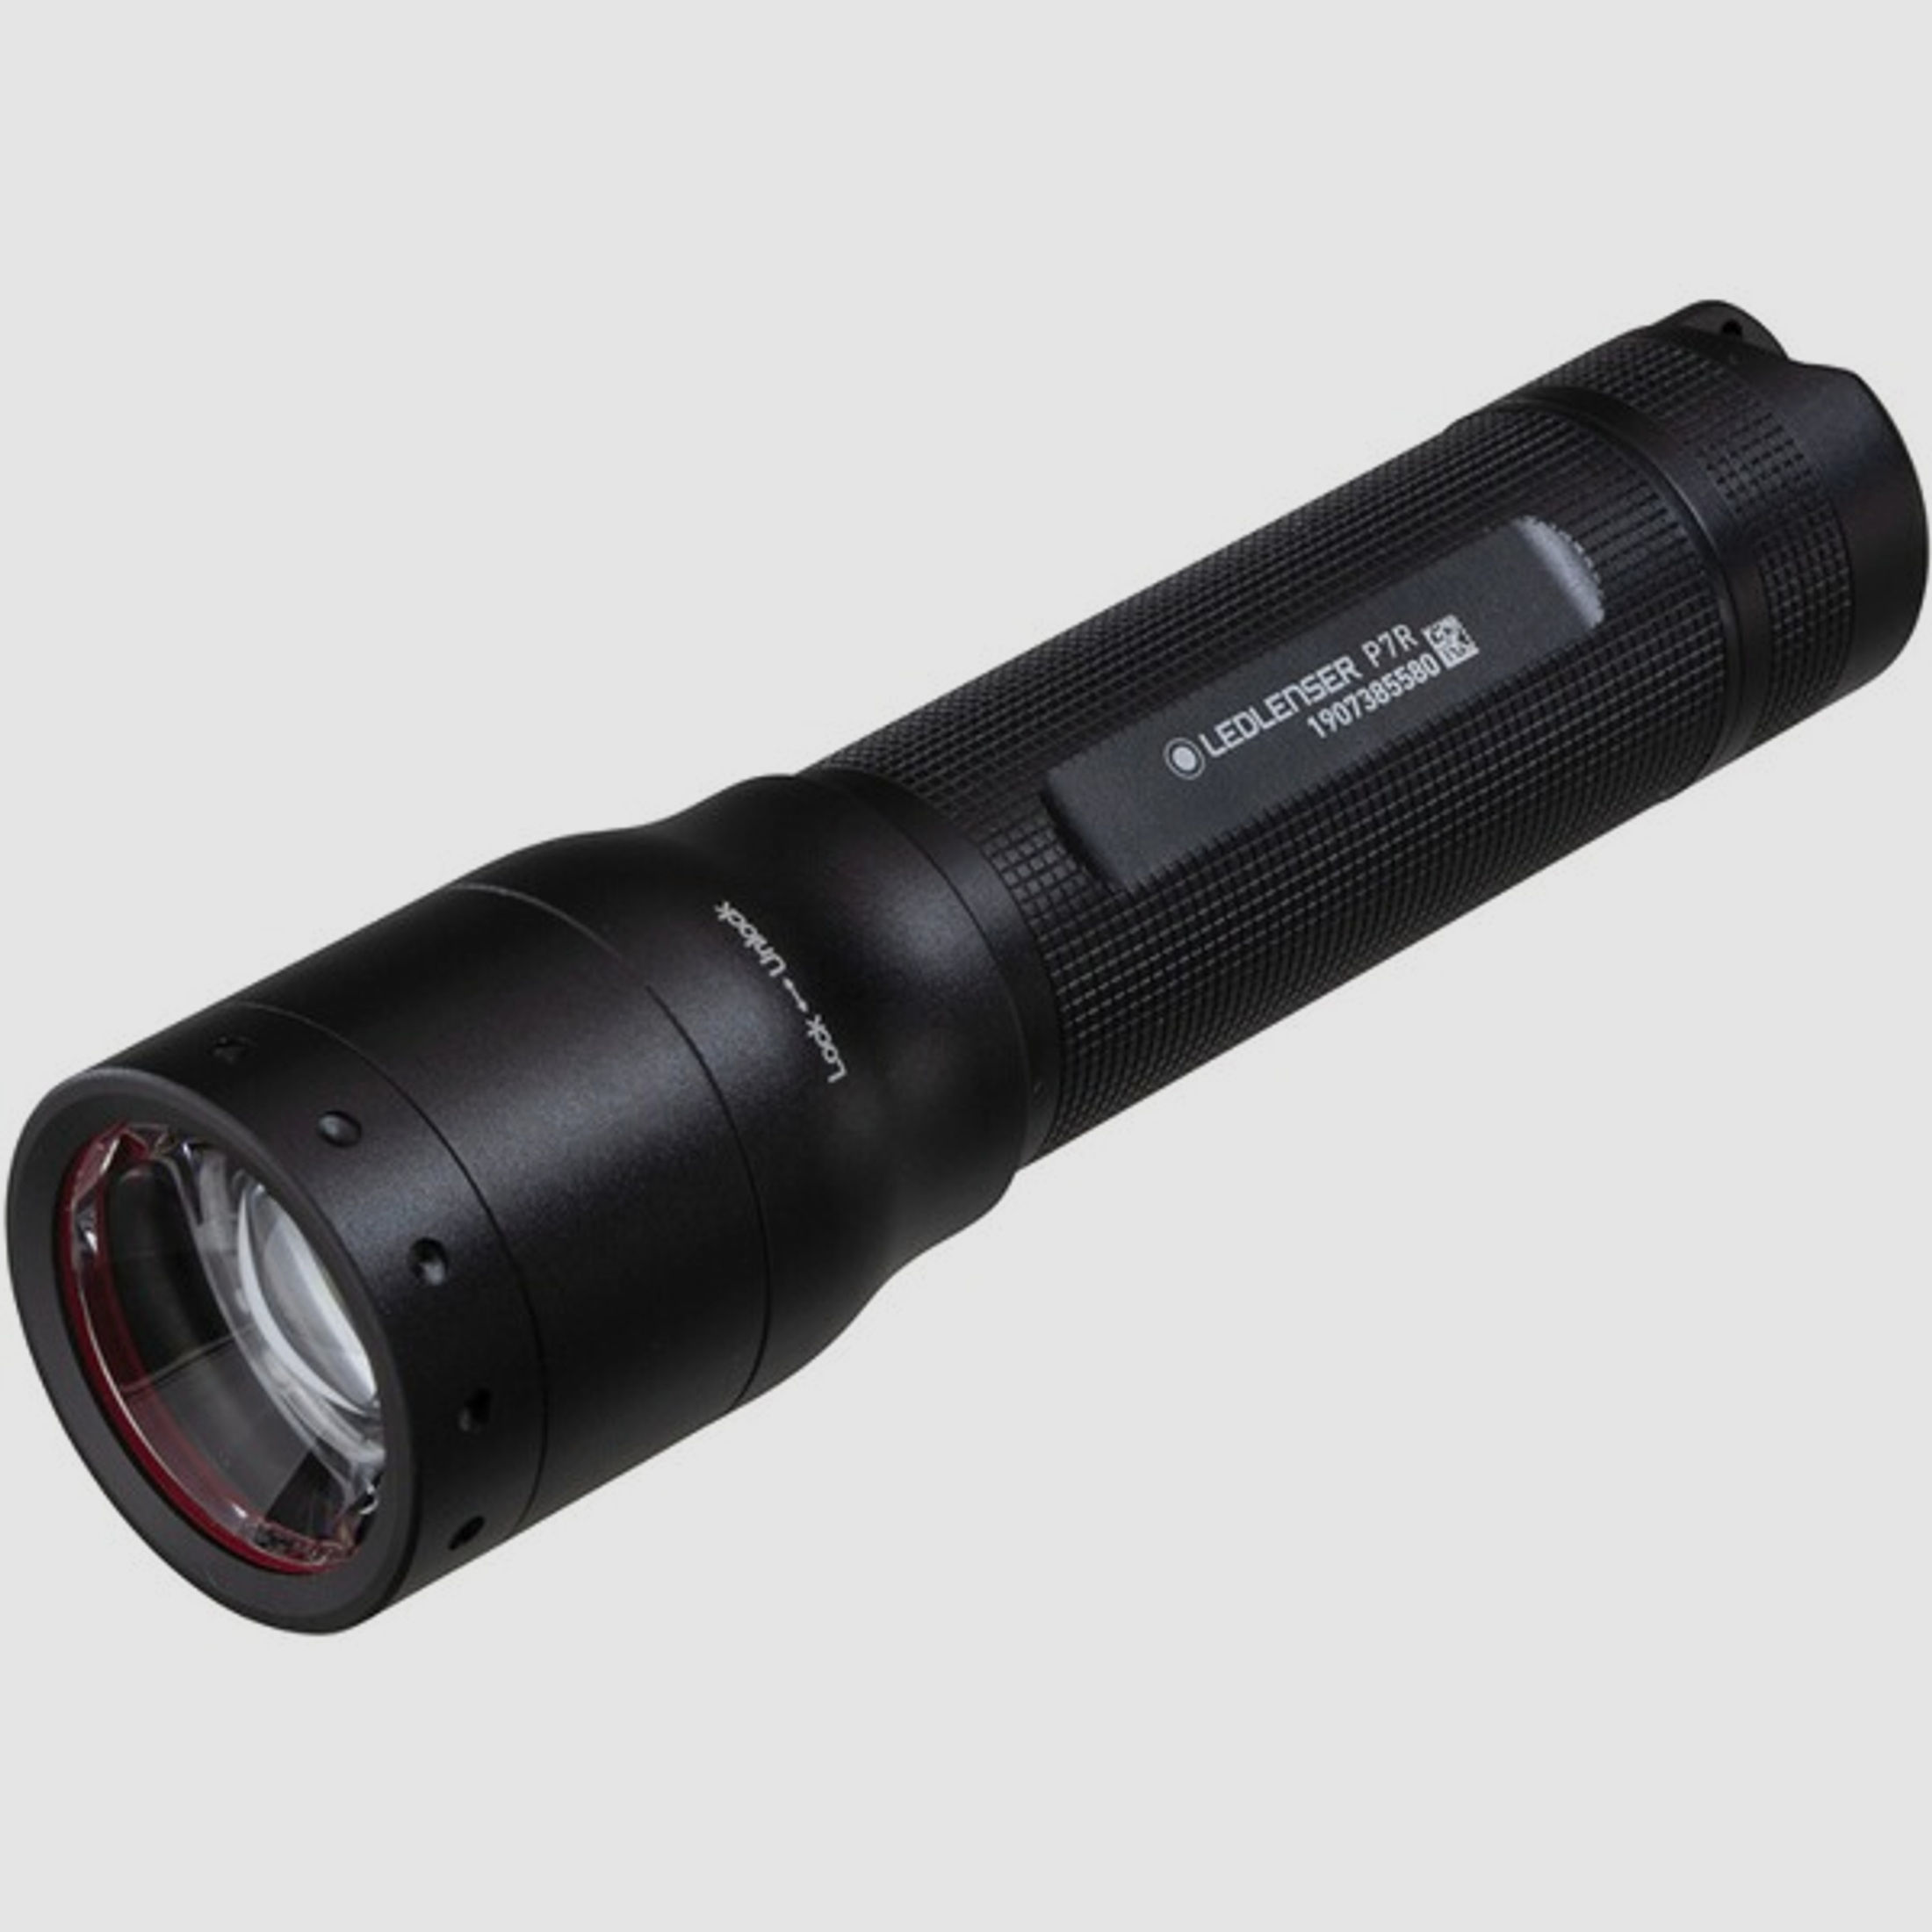 Lampe LED Lenser P7R High performance Li